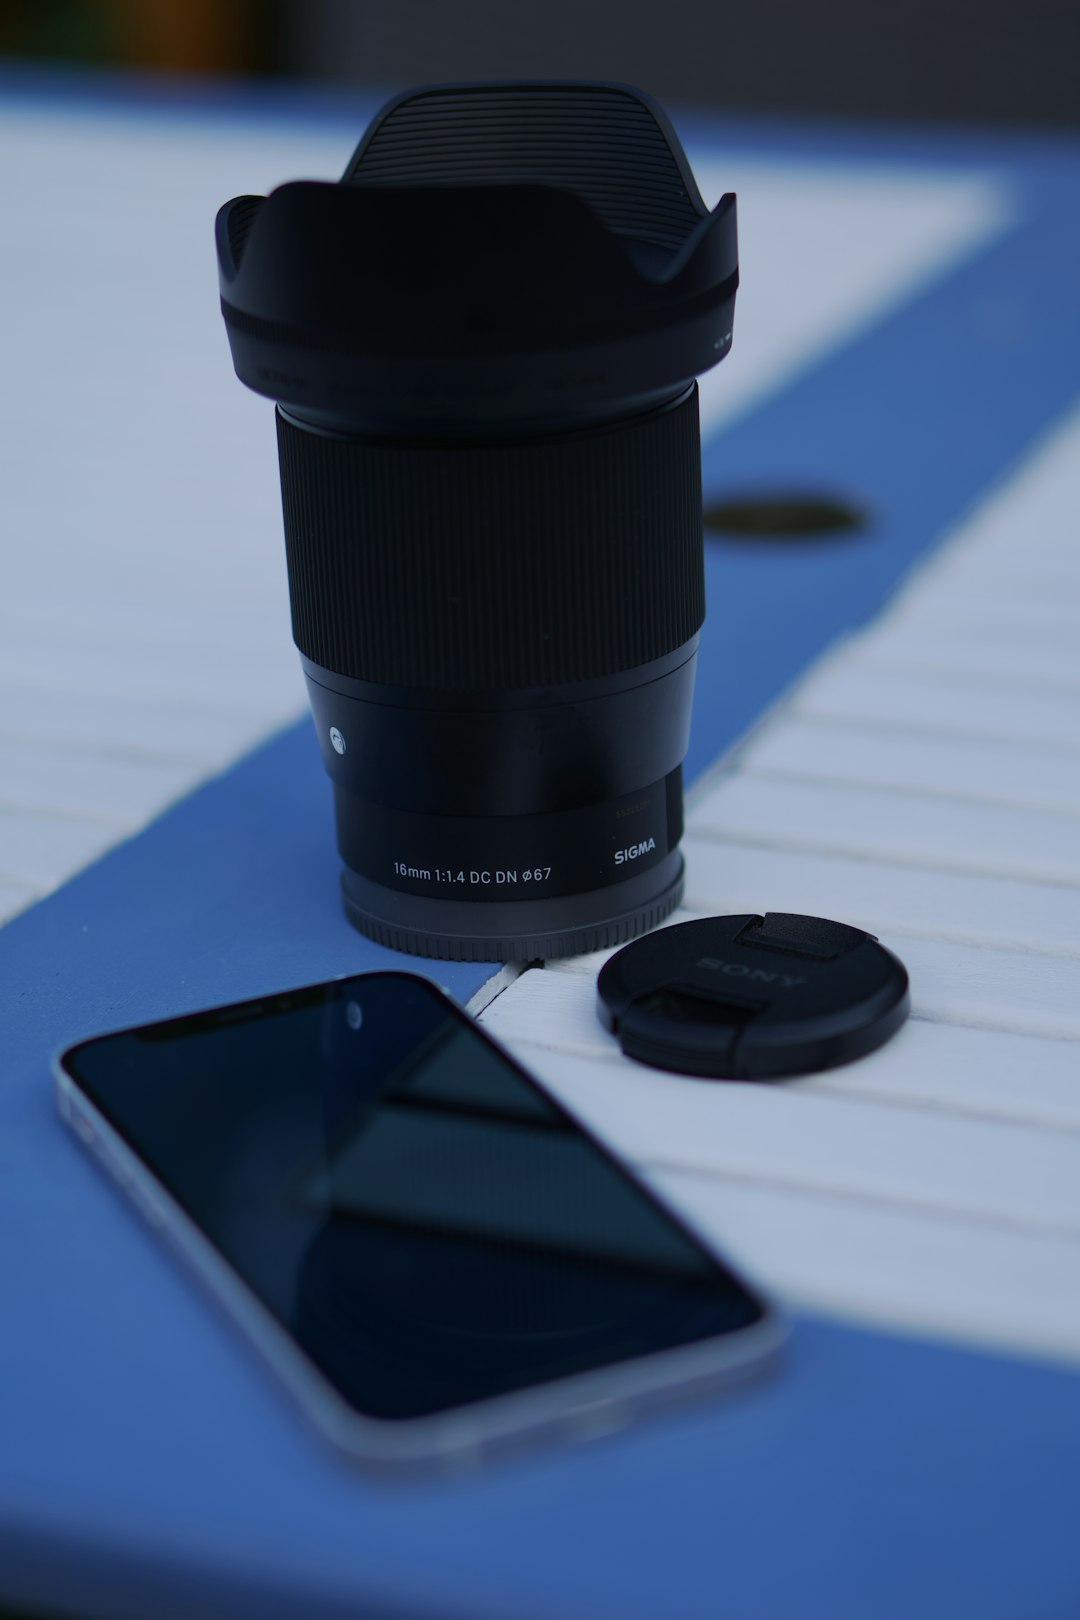 black dslr camera lens beside black samsung smartphone on blue table